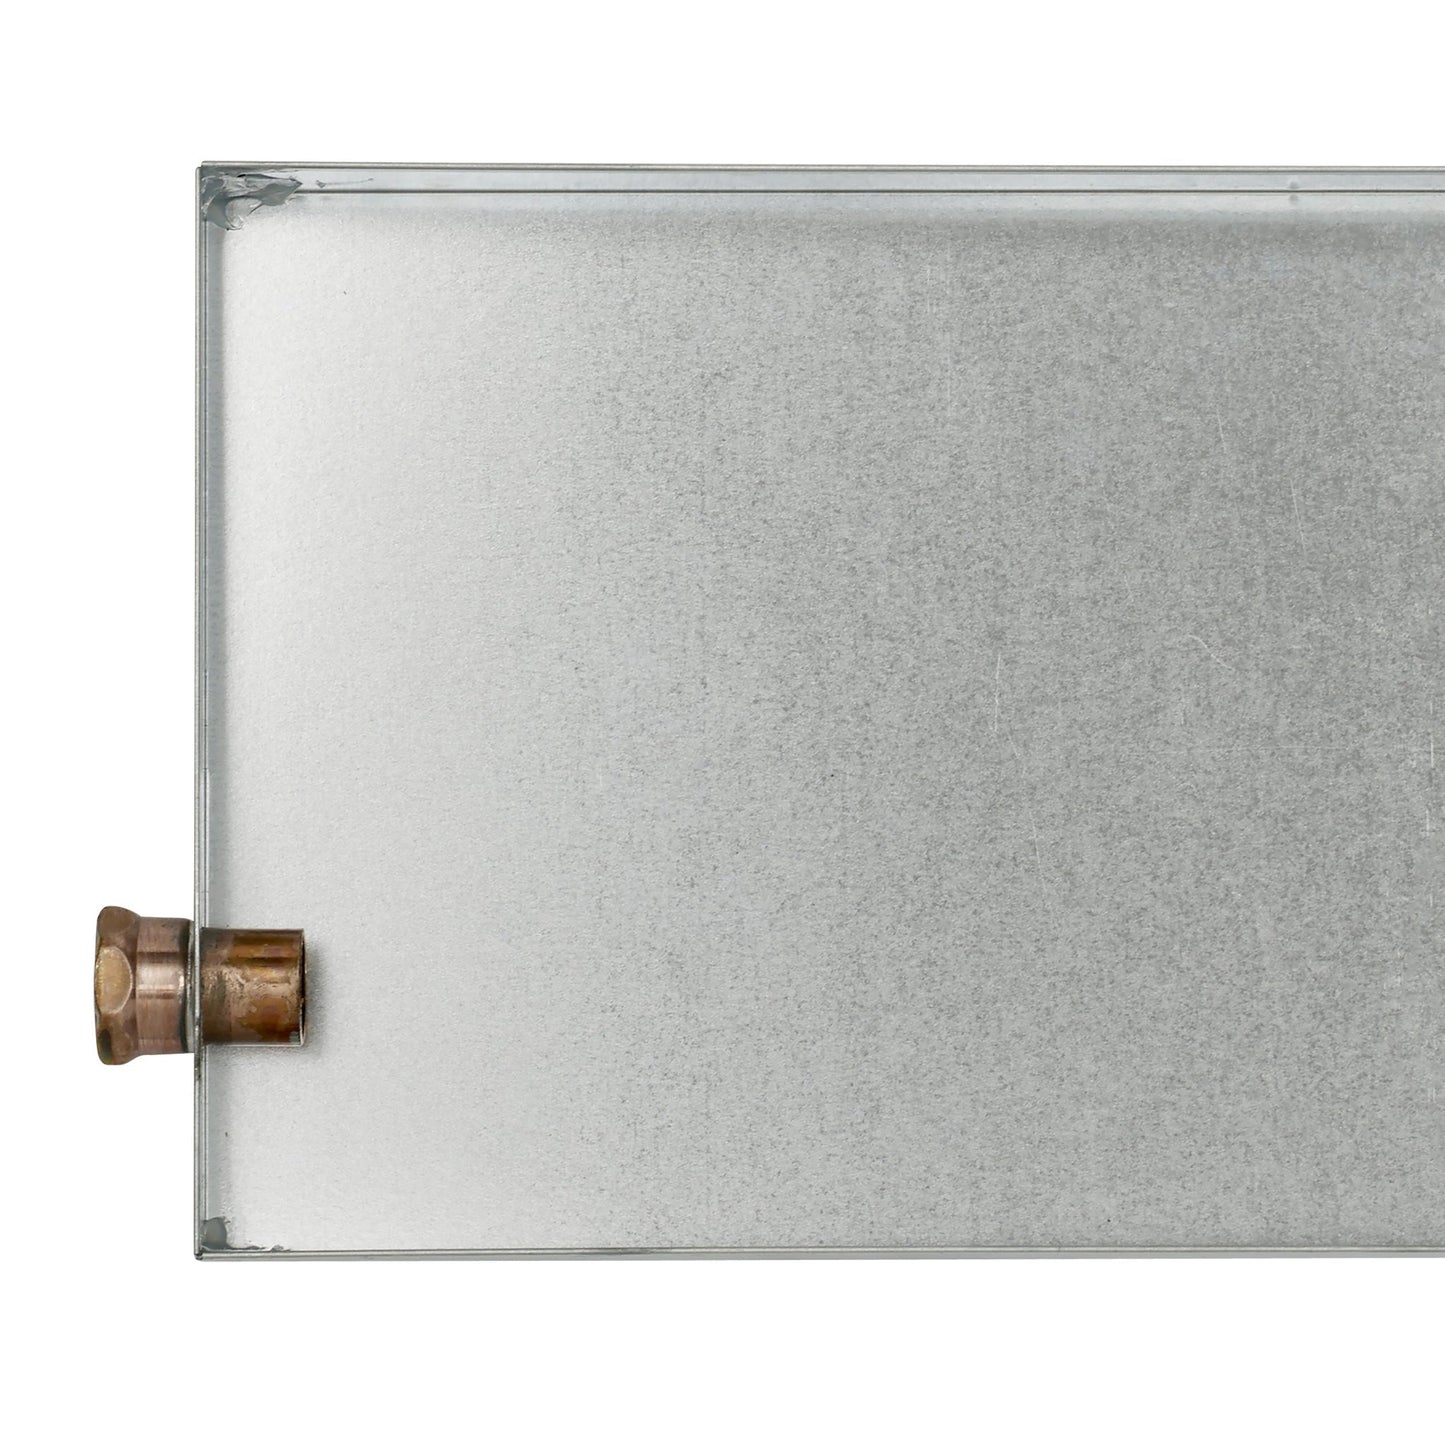 MrSteam Butler 36” x 12” x 12” Max Steam Generator Control Kit Package in Round Satin Brass with Autoflush, Condensation Pan, Steamlinx, Steamhead